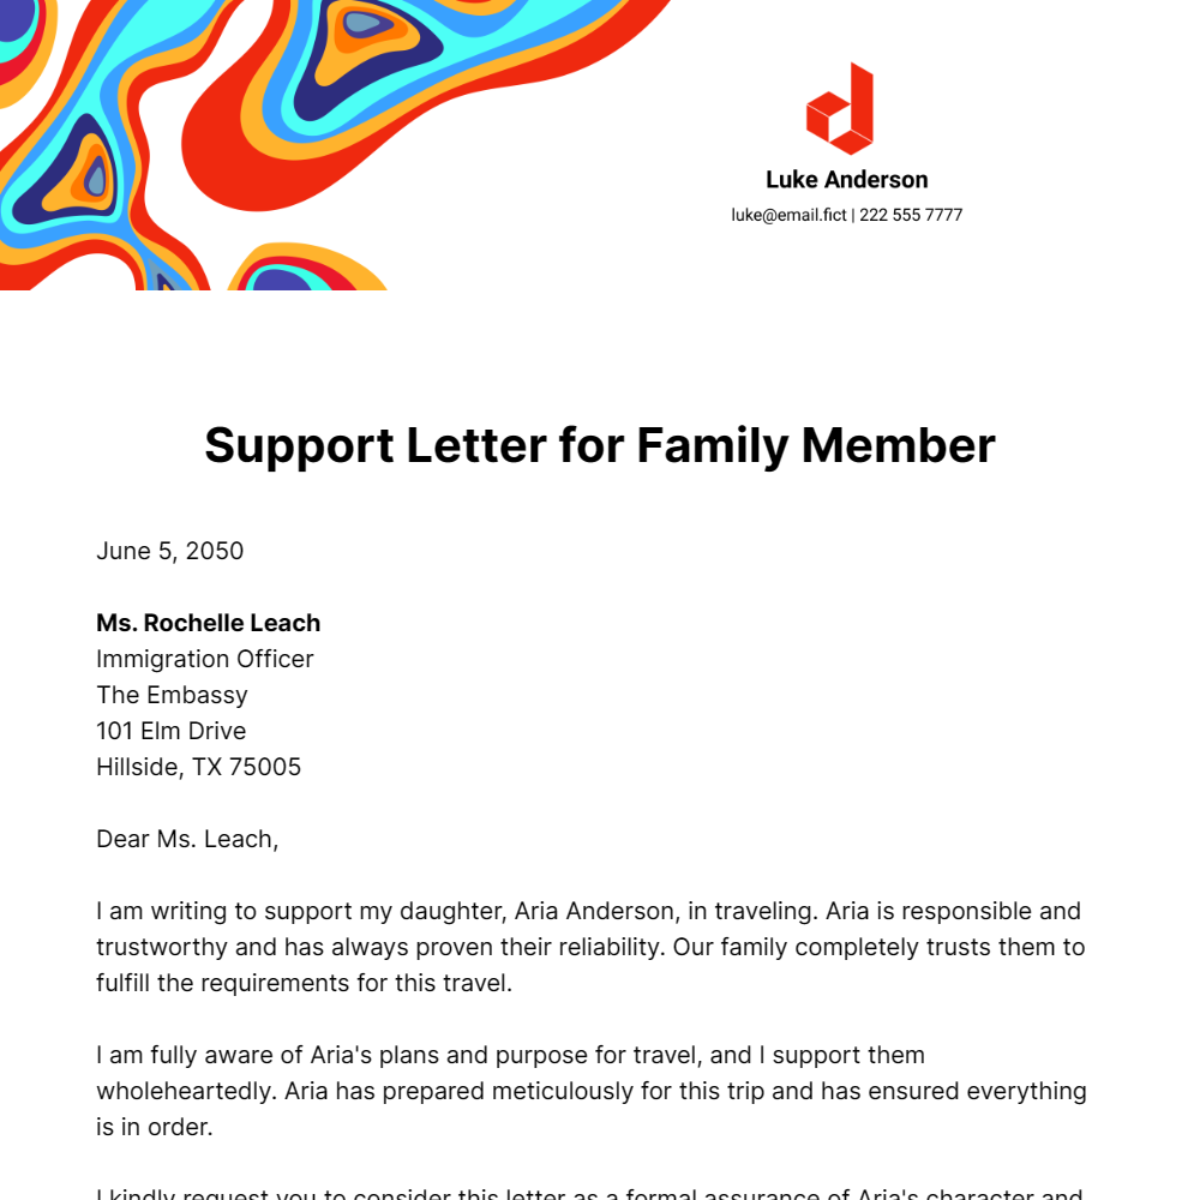 Support Letter for Family Member Template